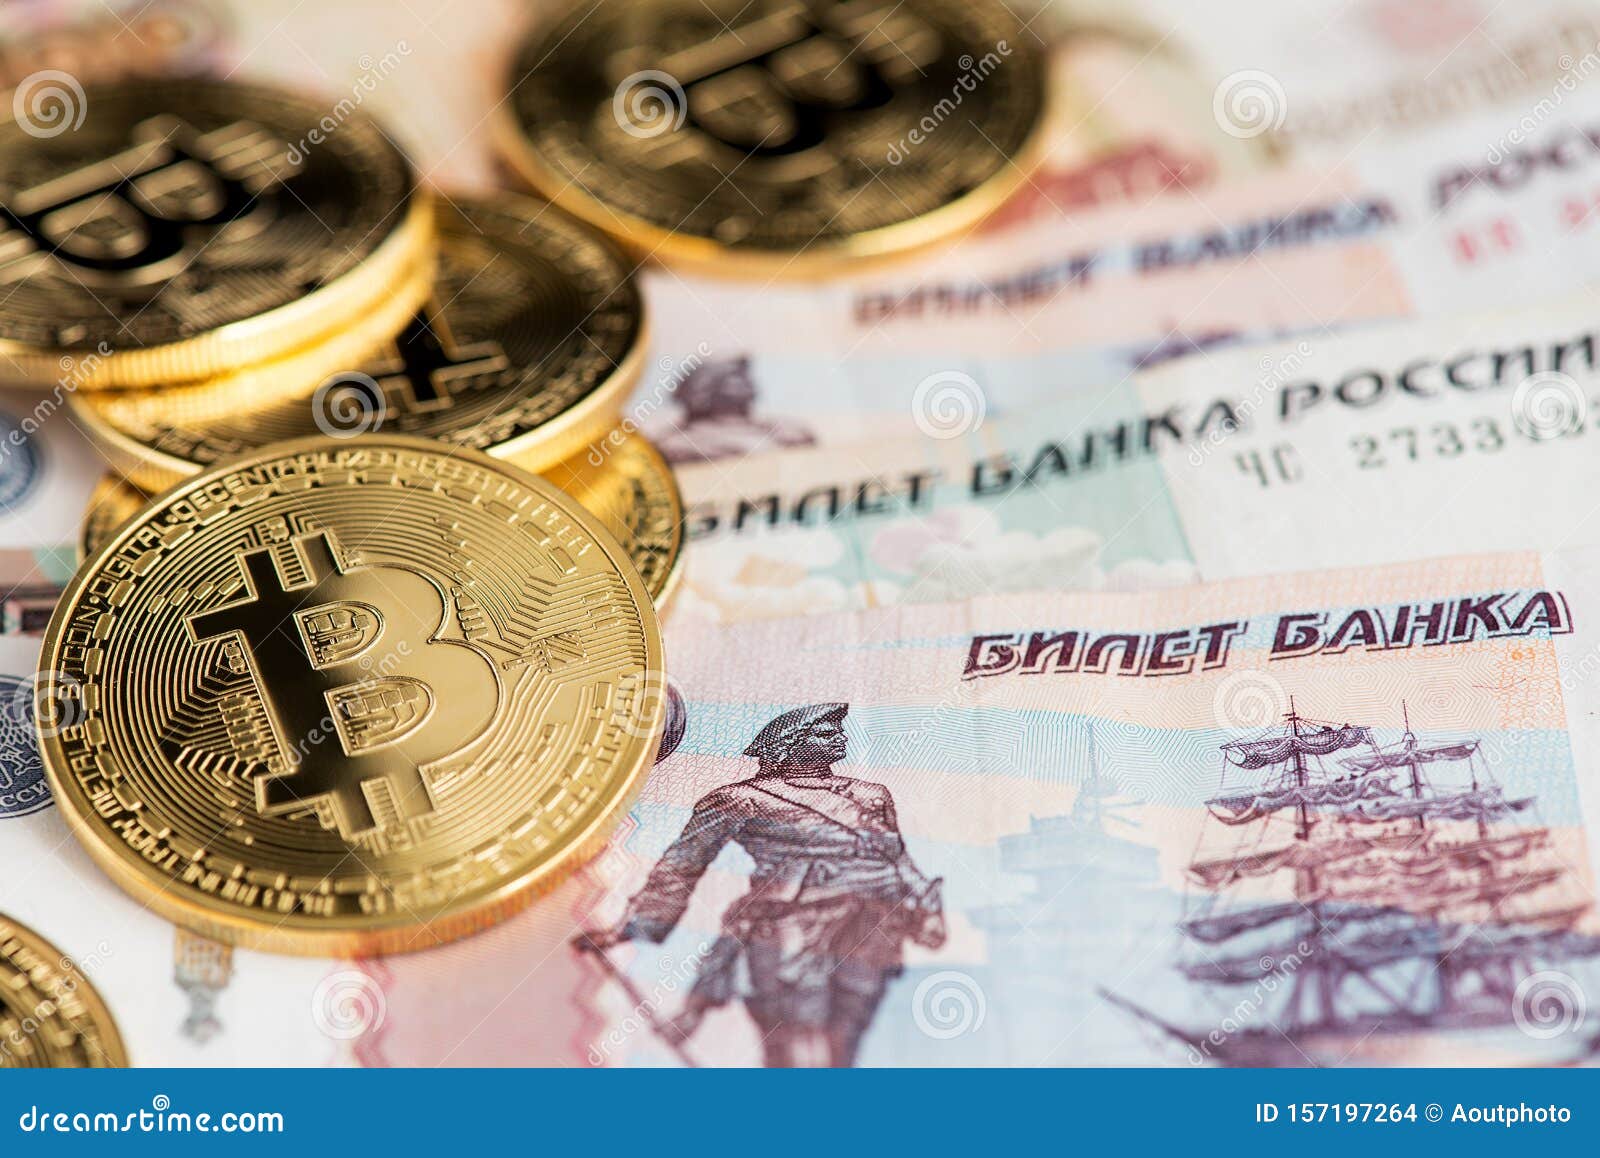 Купить биткоины на 100 рублей биткоин украина вывод